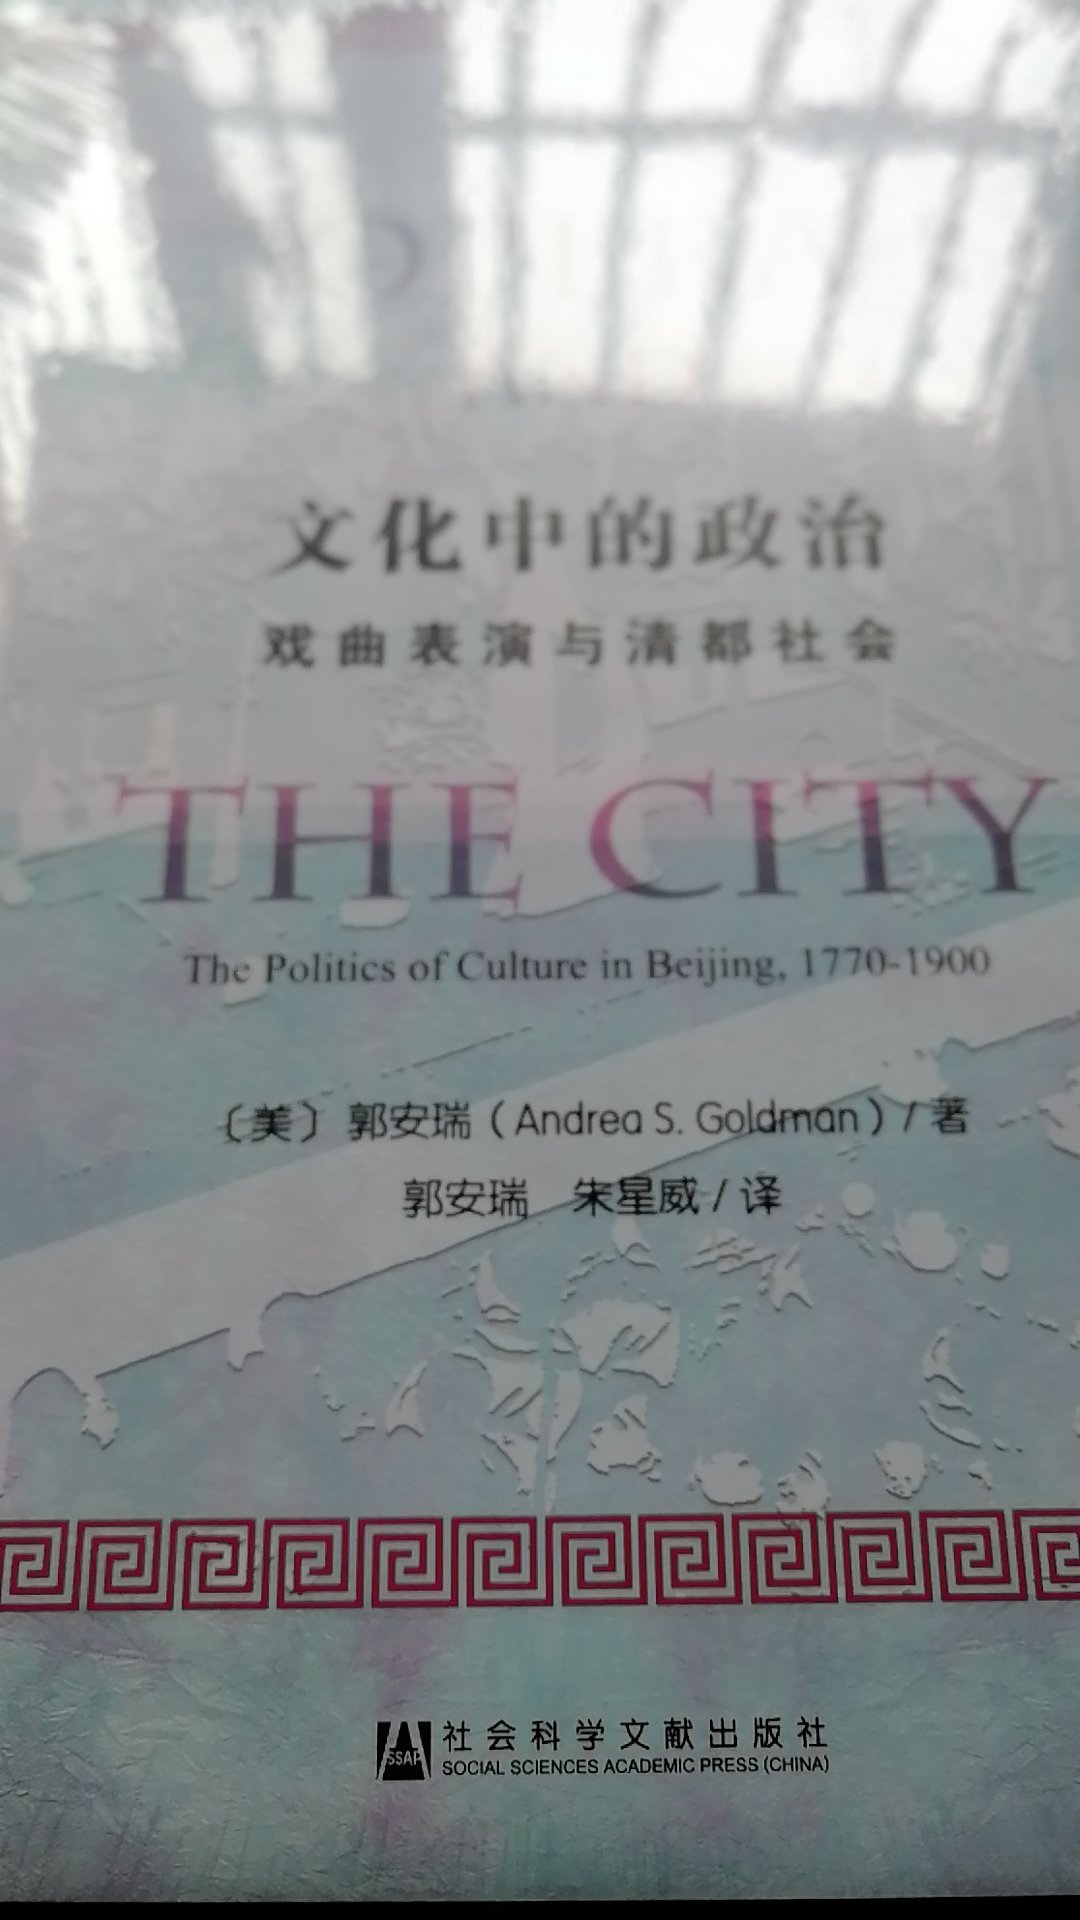 郭安瑞的《文化中的政治》一书对戏曲表演与清都社会的分析让人惊叹。